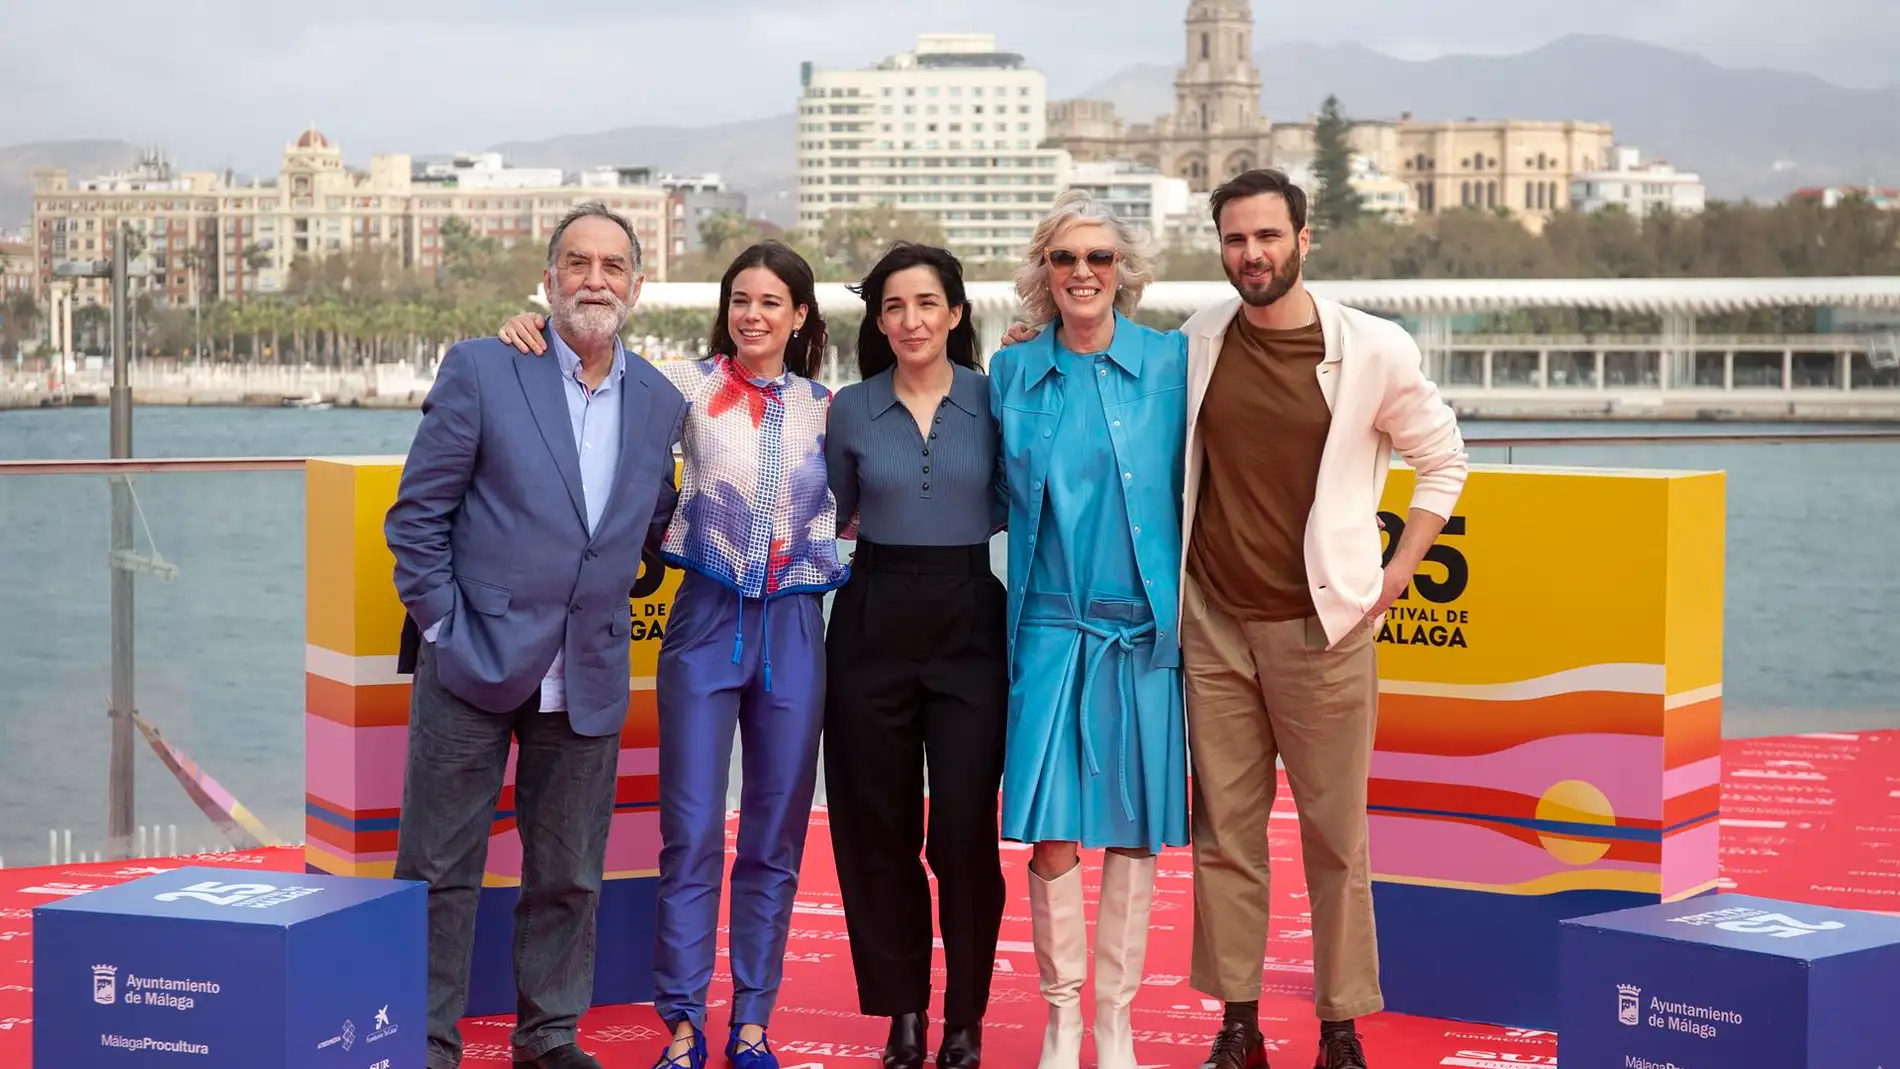 La directora de cine Alauda Ruiz de Azúa posa junto a los actores Ramón Barea, Laia Costa, Susi Sánchez y Mikel Bustamante